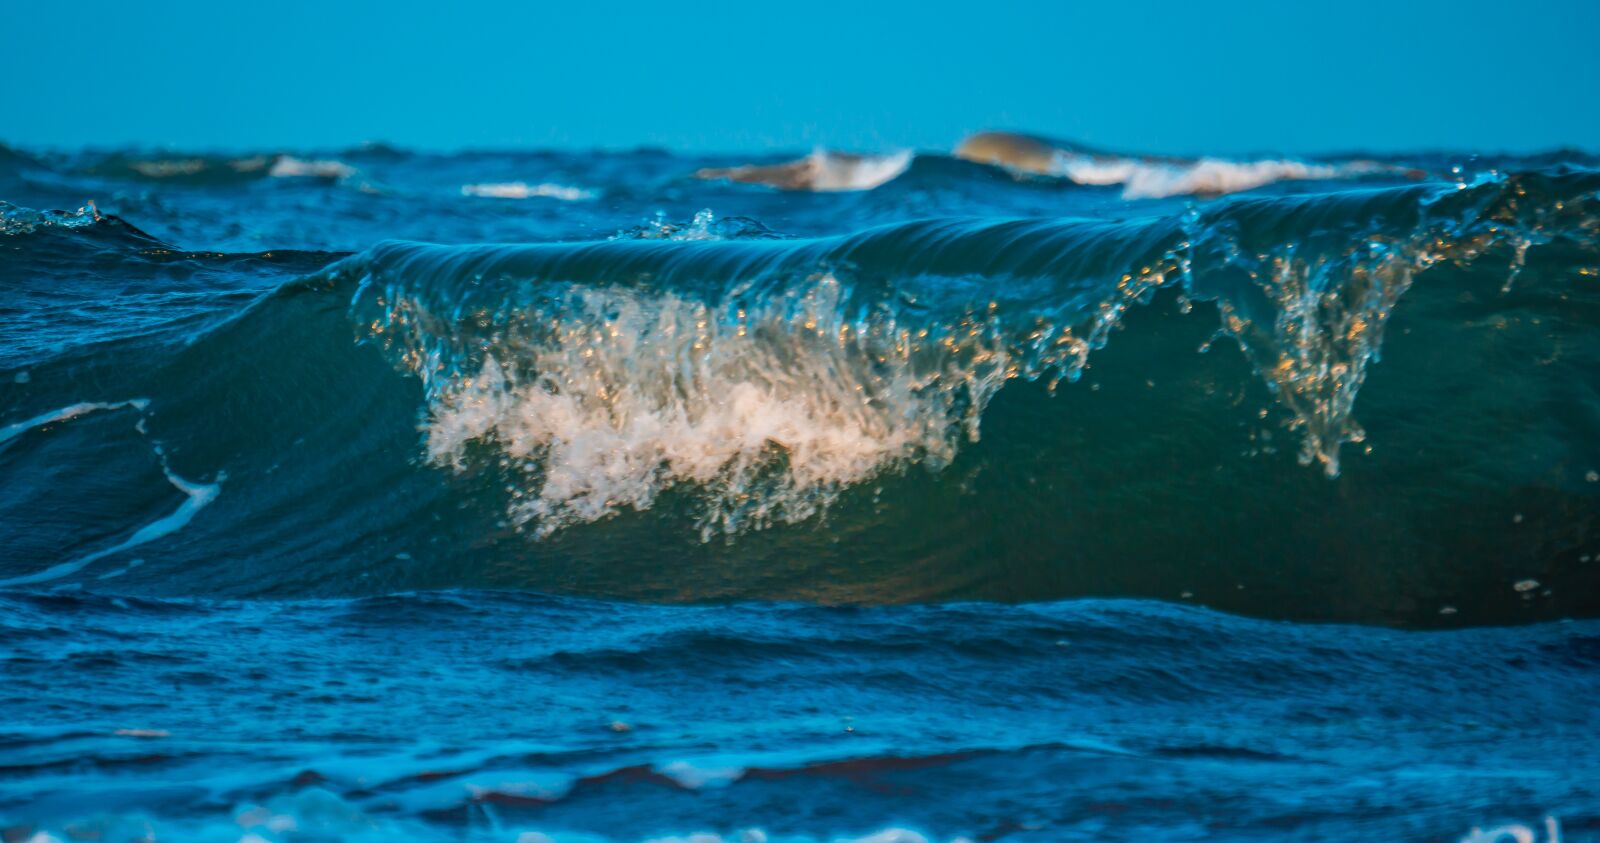 Sony E 55-210mm F4.5-6.3 OSS sample photo. Waves, beach, ocean photography